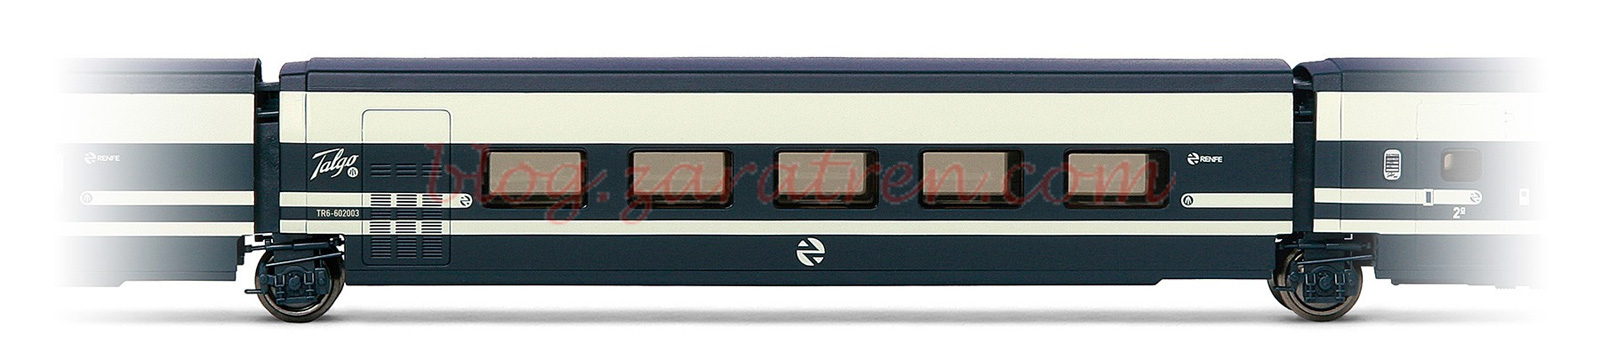 Electrotren – Coche complementario Talgo Pendular, RENFE, Restaurante, Escala H0, Ref: E3283.